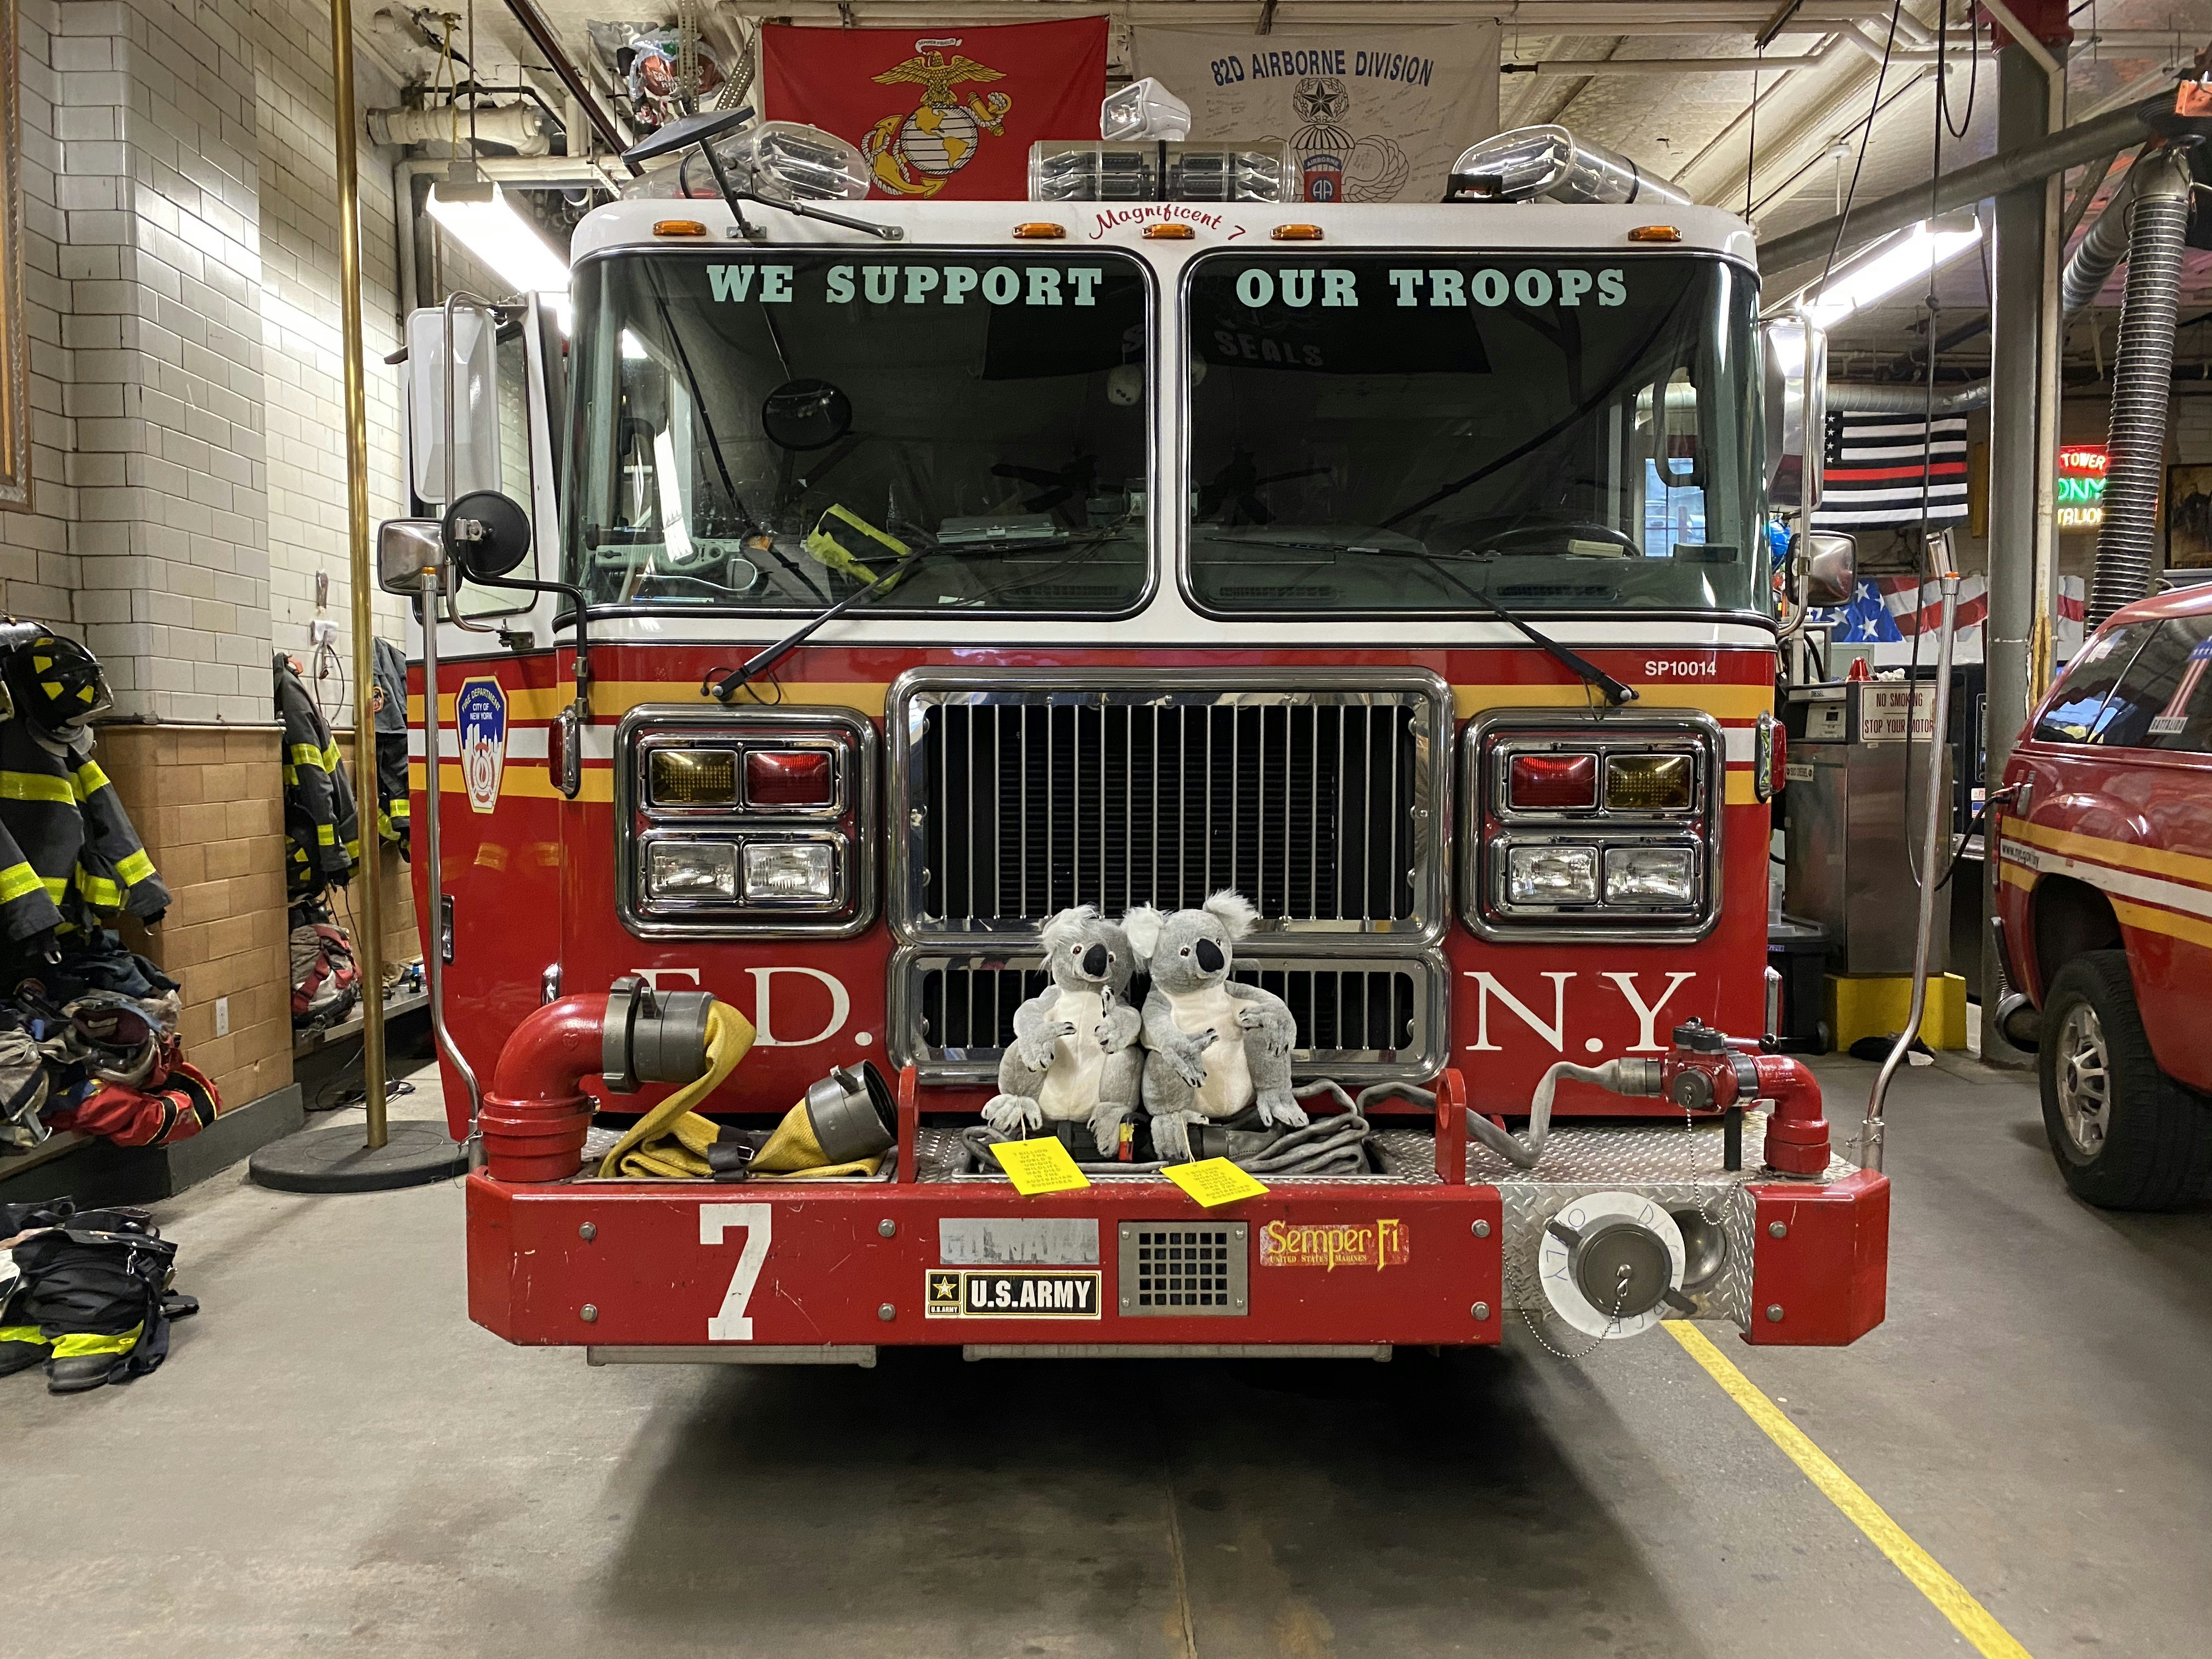 Two stuffed koalas sit on a fire truck in NYC